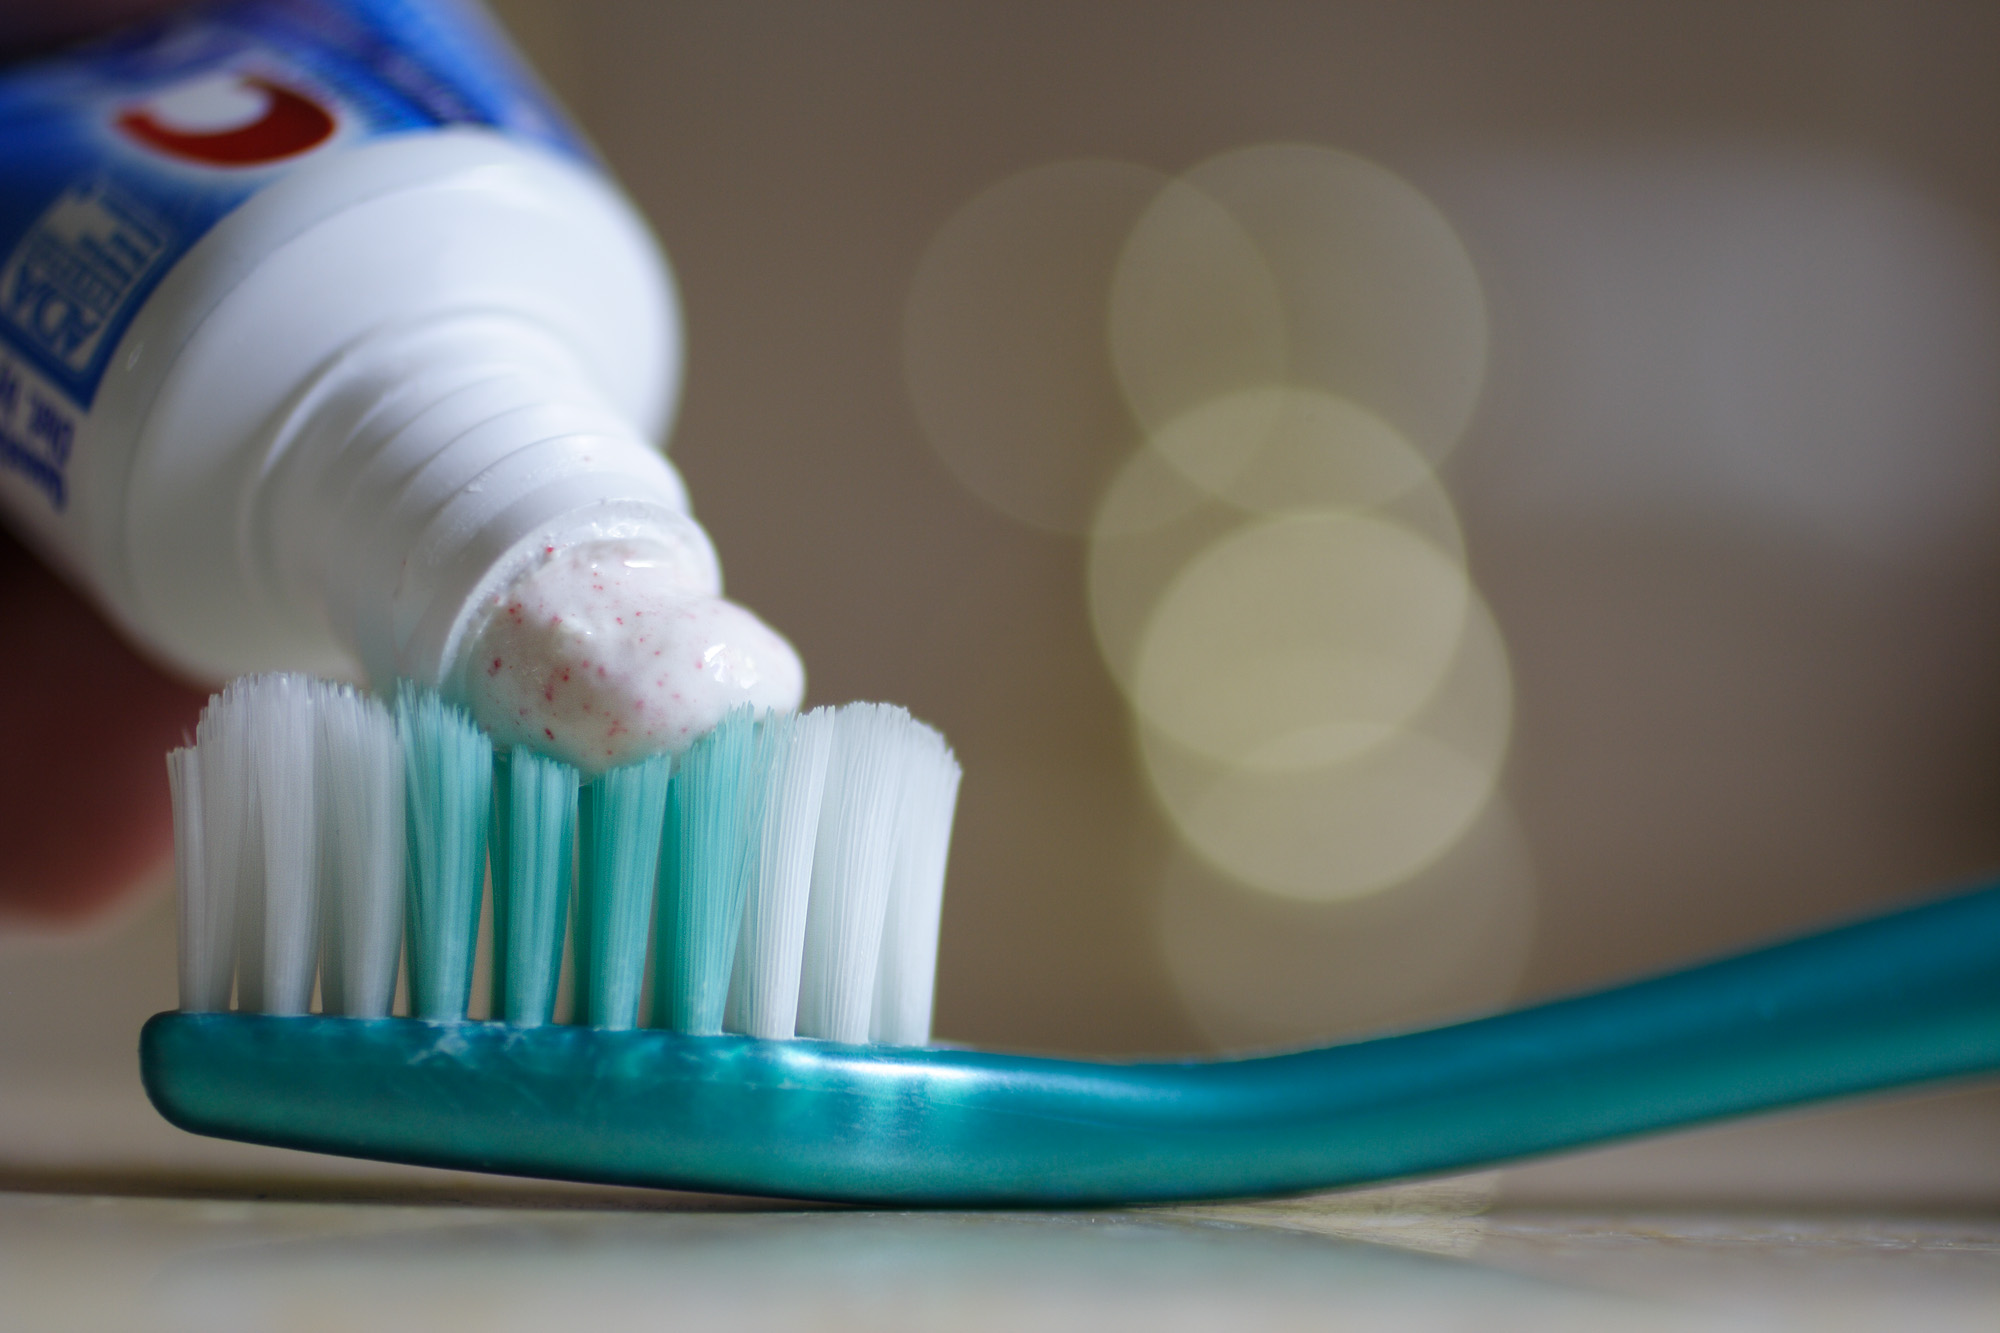 Cum va otraviti zilnic cu pasta de dinti. Substanta chimica periculoasa continuta de produsul de igiena